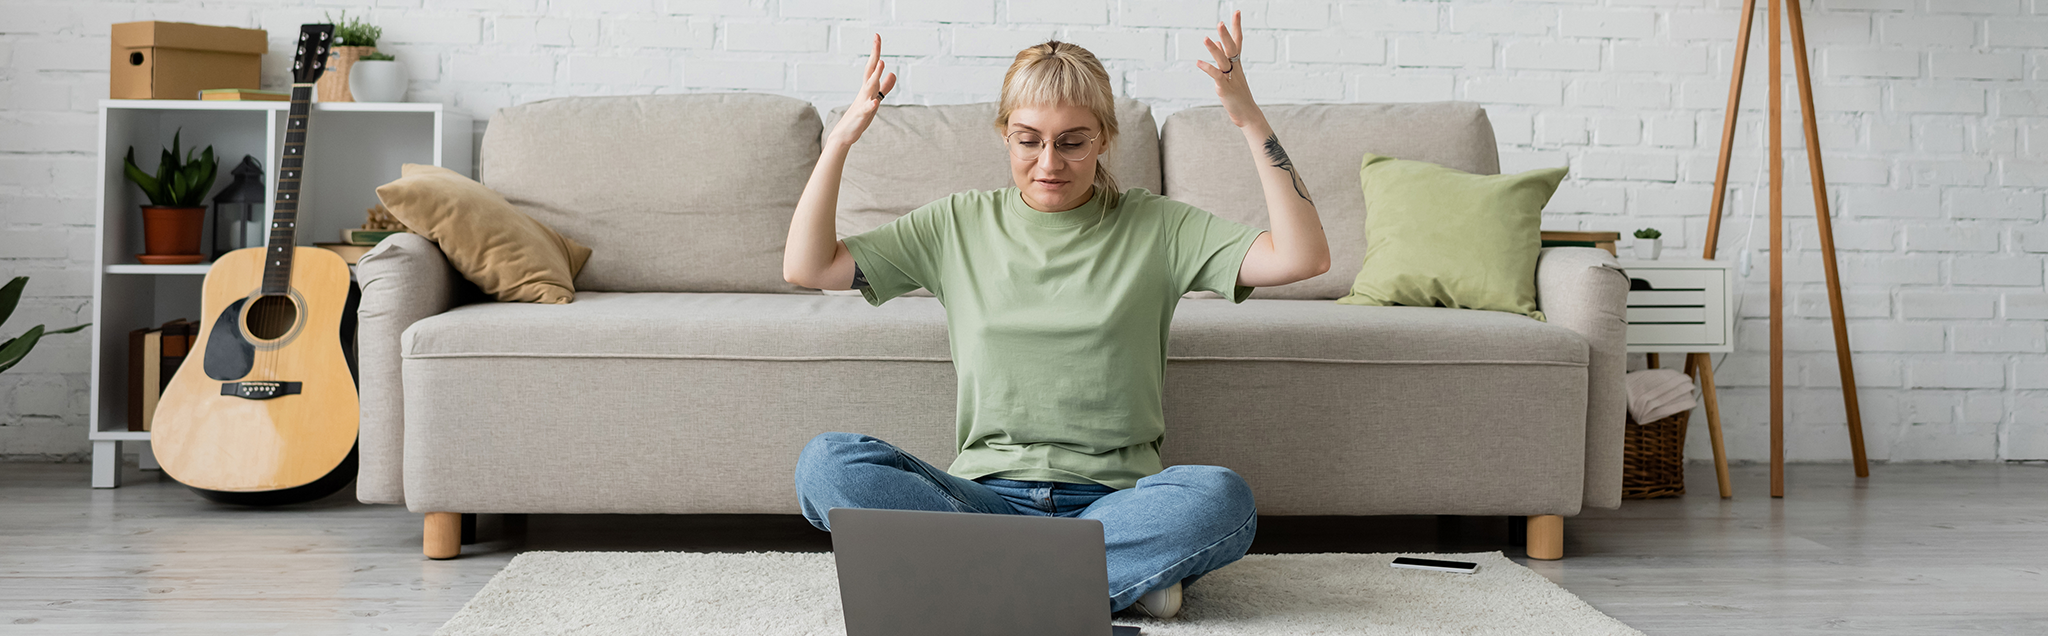 Blonde tättowierte Frau im Schneidersitz am Boden mit Laptop aufgeregt emotional, modernes Wohnzimmer, Couch, Teppich